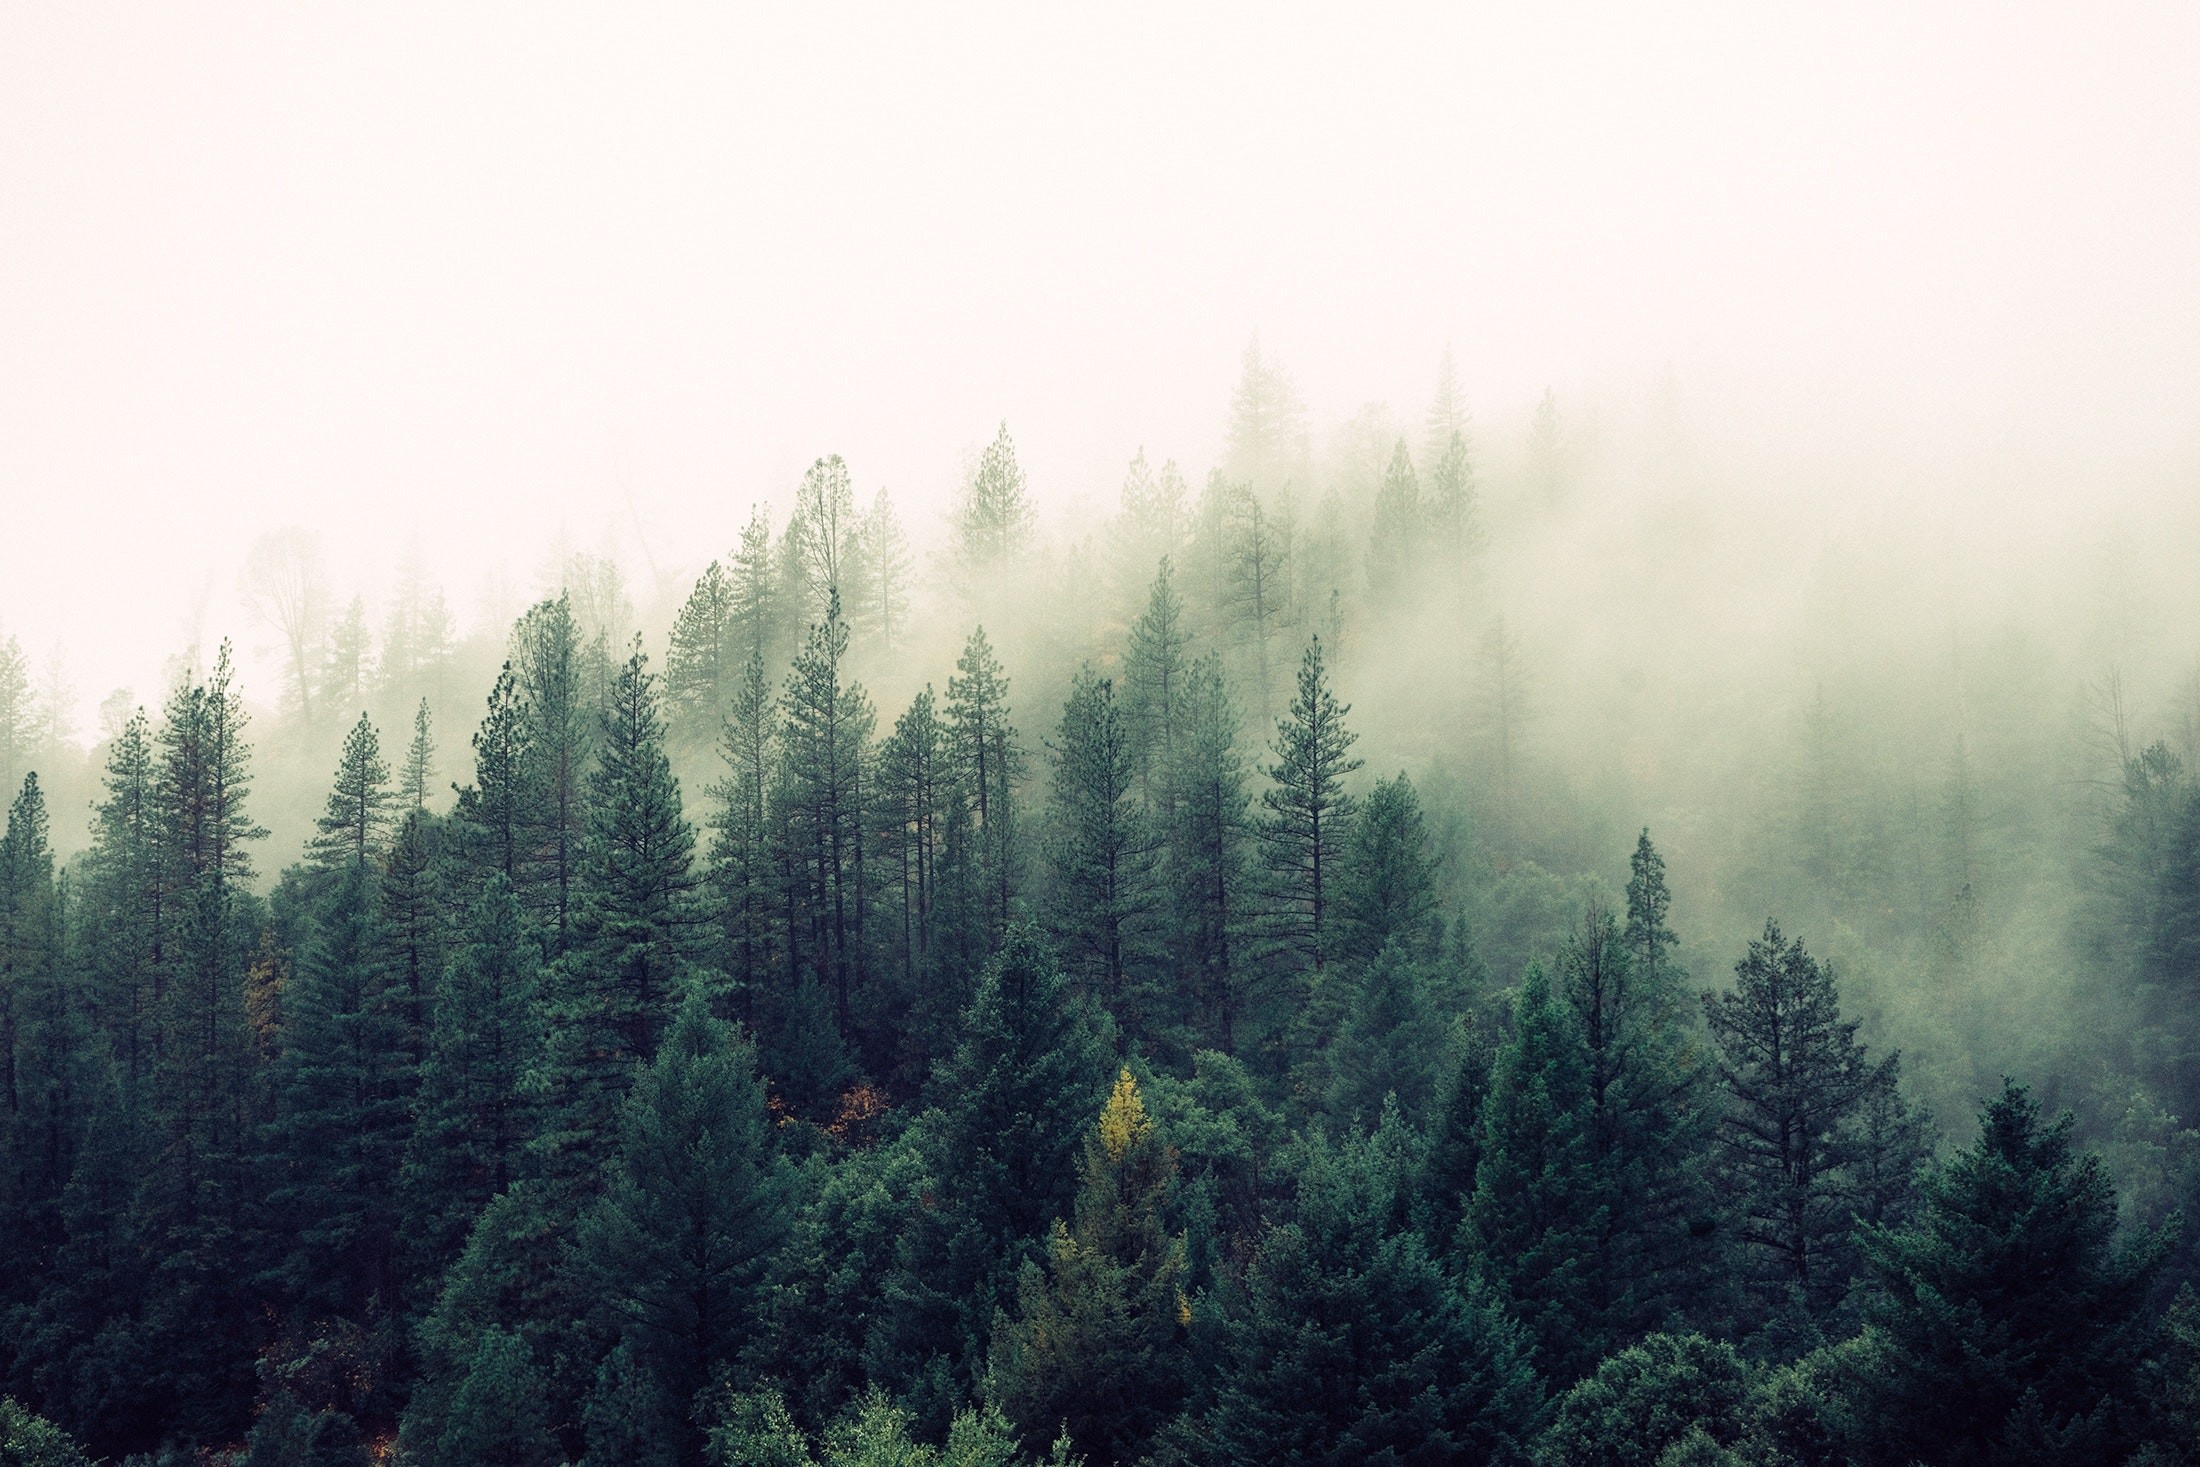 2200x1467 Similar Photos. Trees With Fog. Pixabay Â· Forest